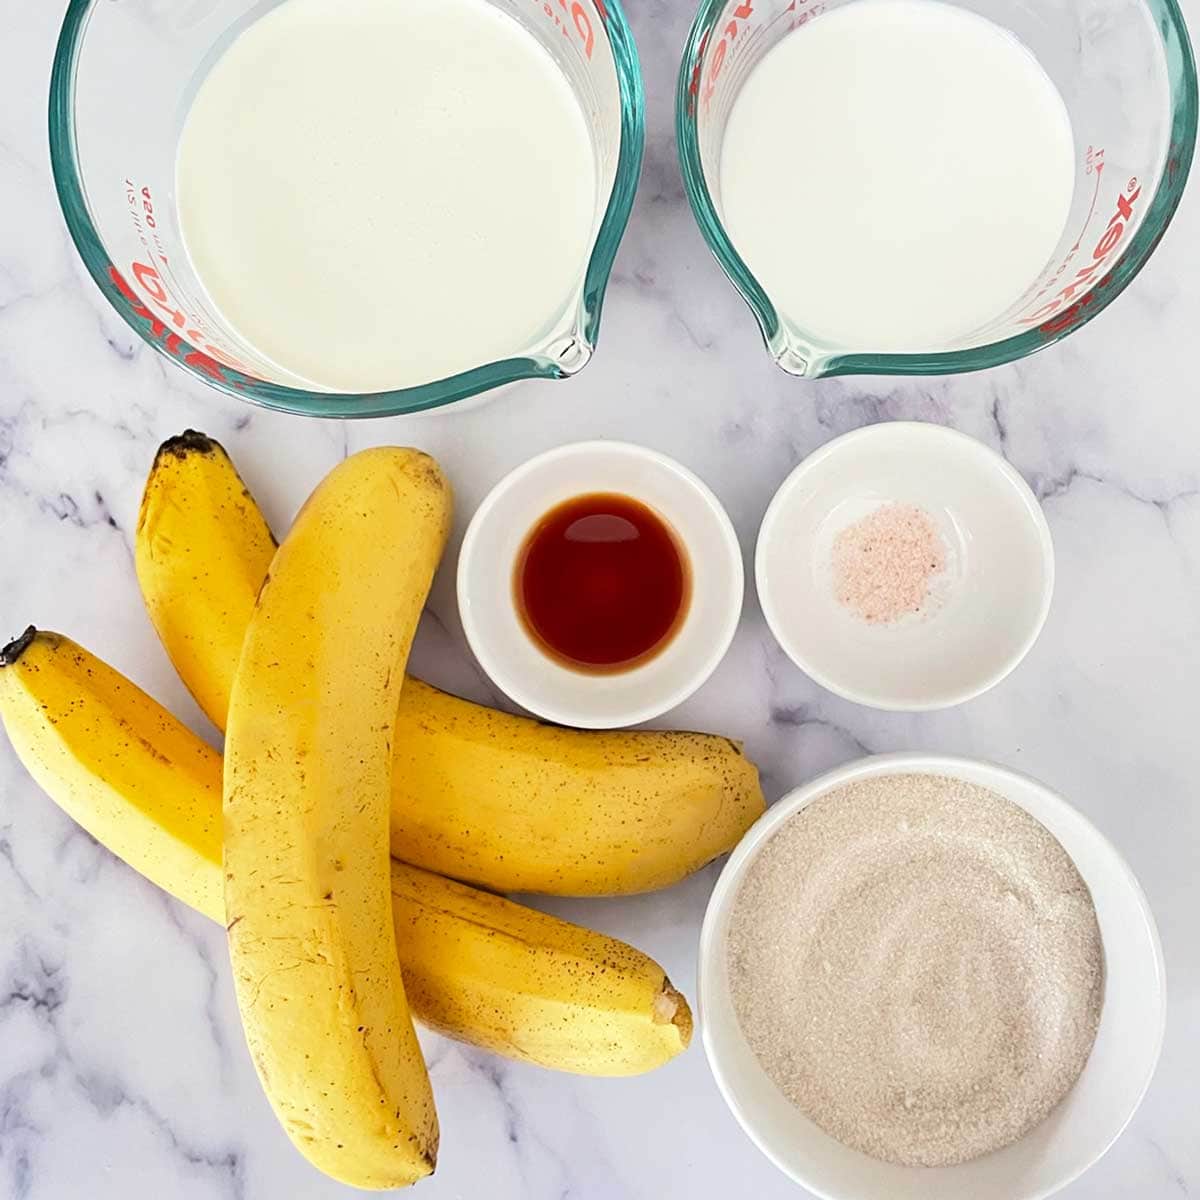 Banana ice cream ingredients.